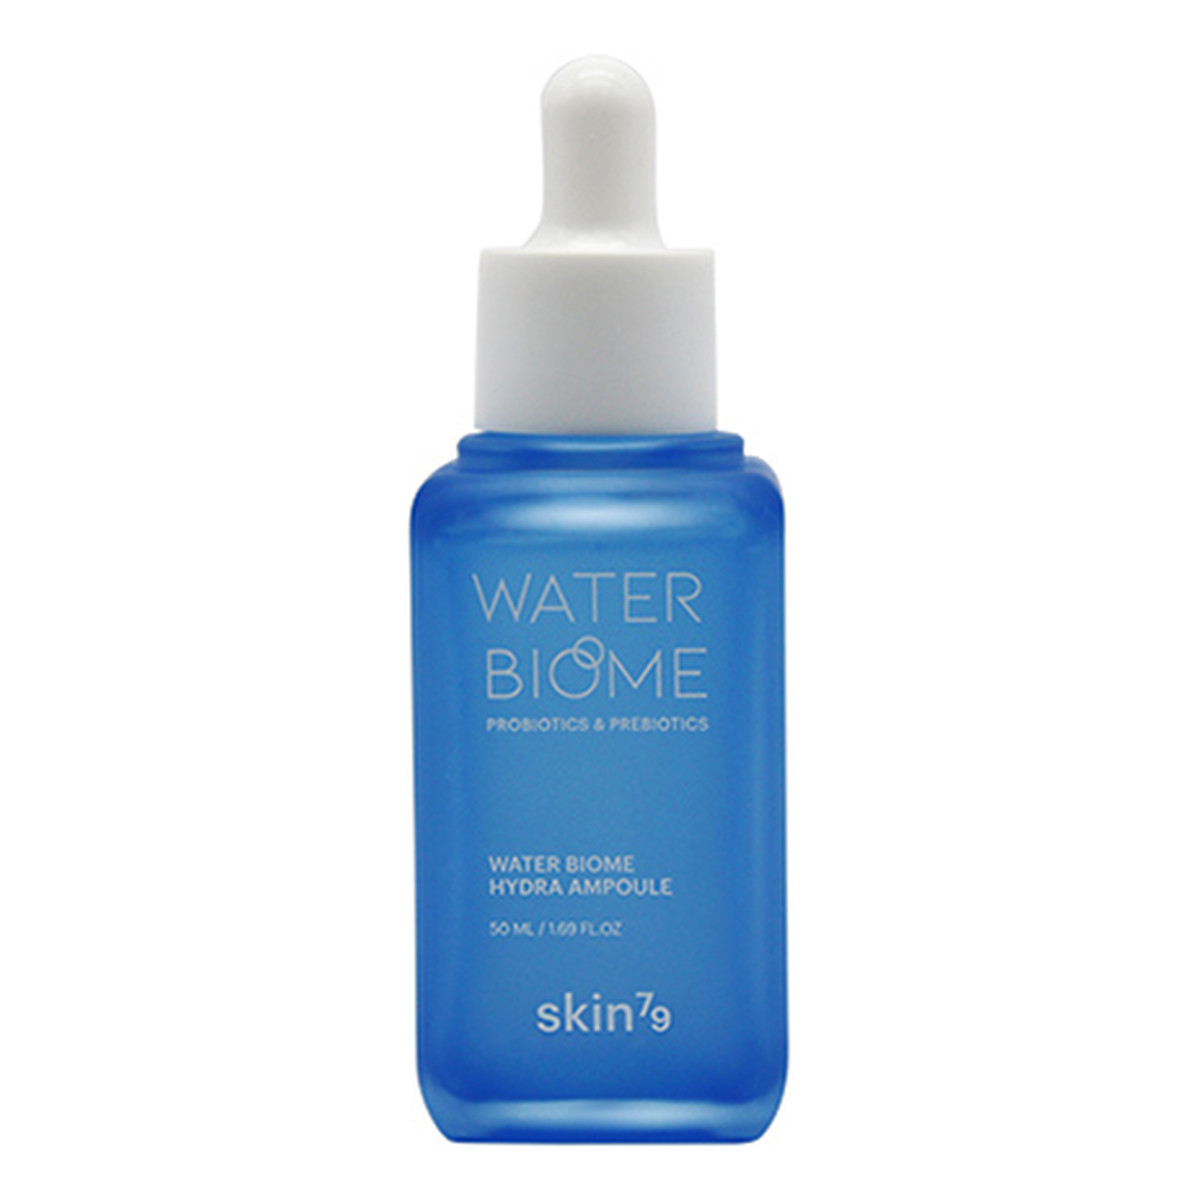 Skin79 Water Biome Hydra Ampoule ampułka z probiotykami i prebiotykami 50ml